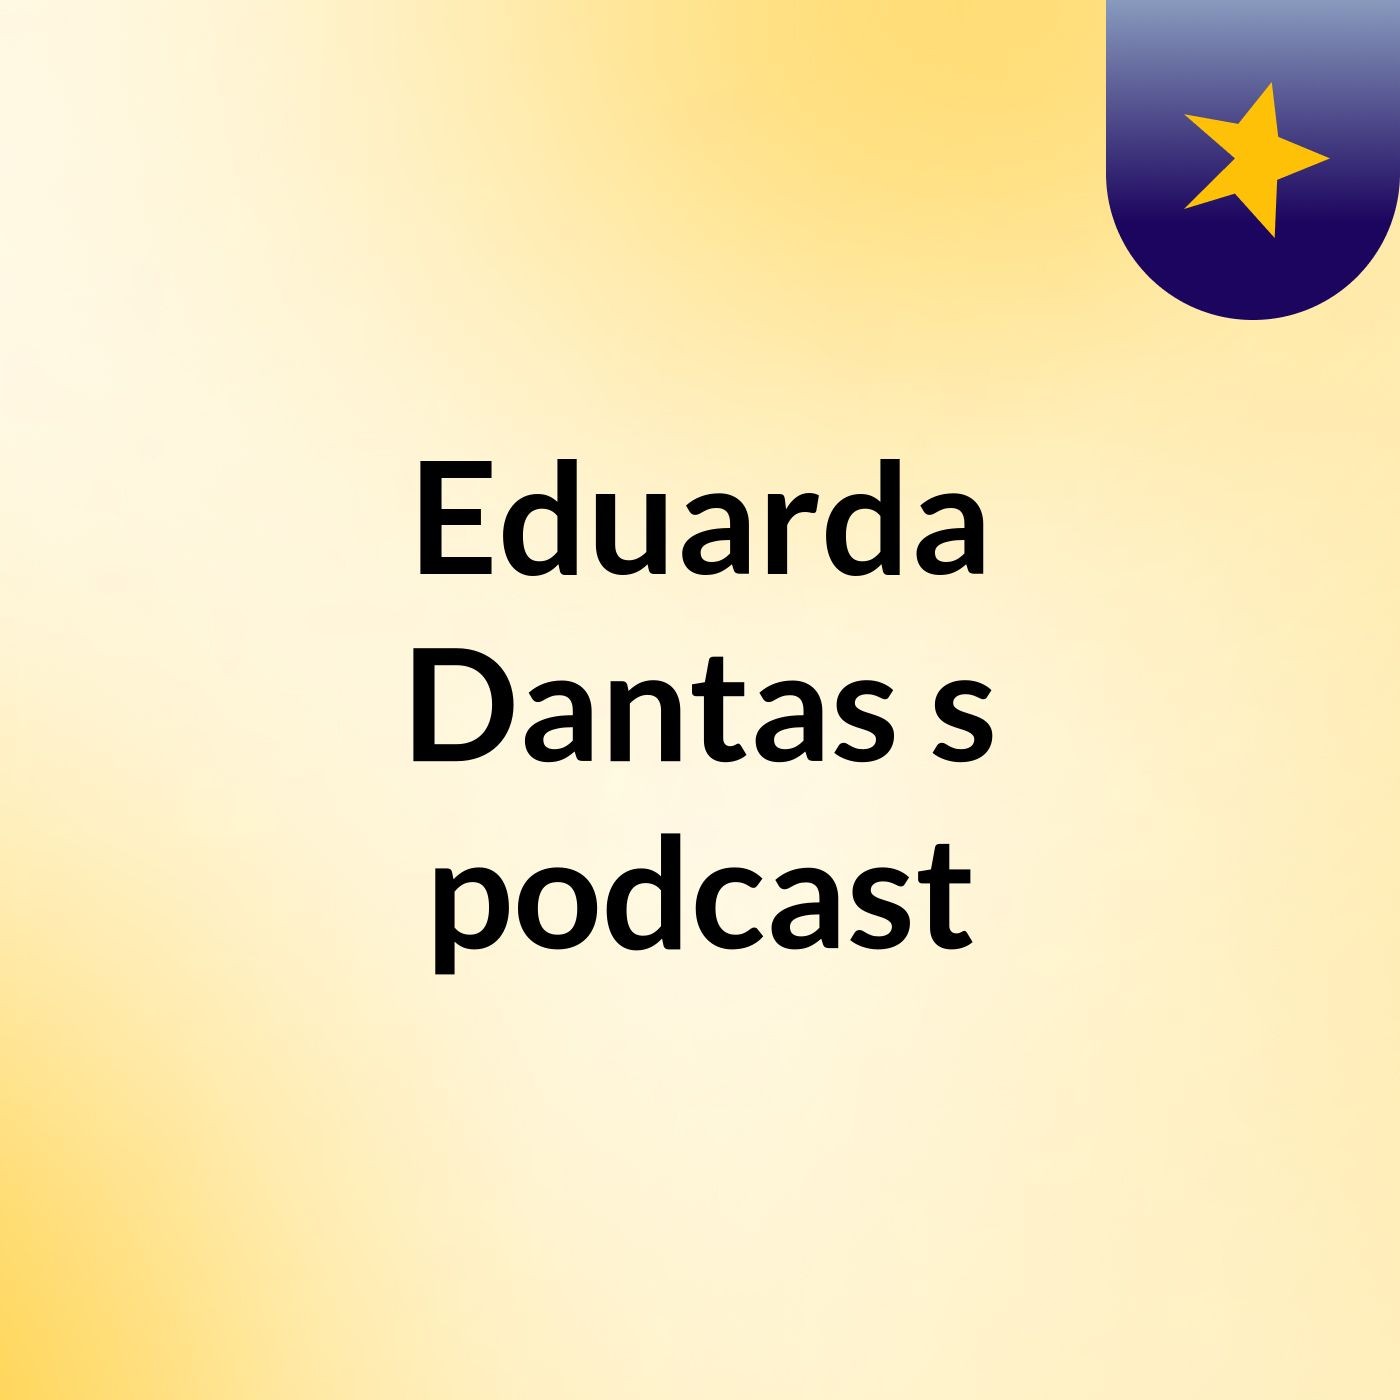 Eduarda Dantas's podcast